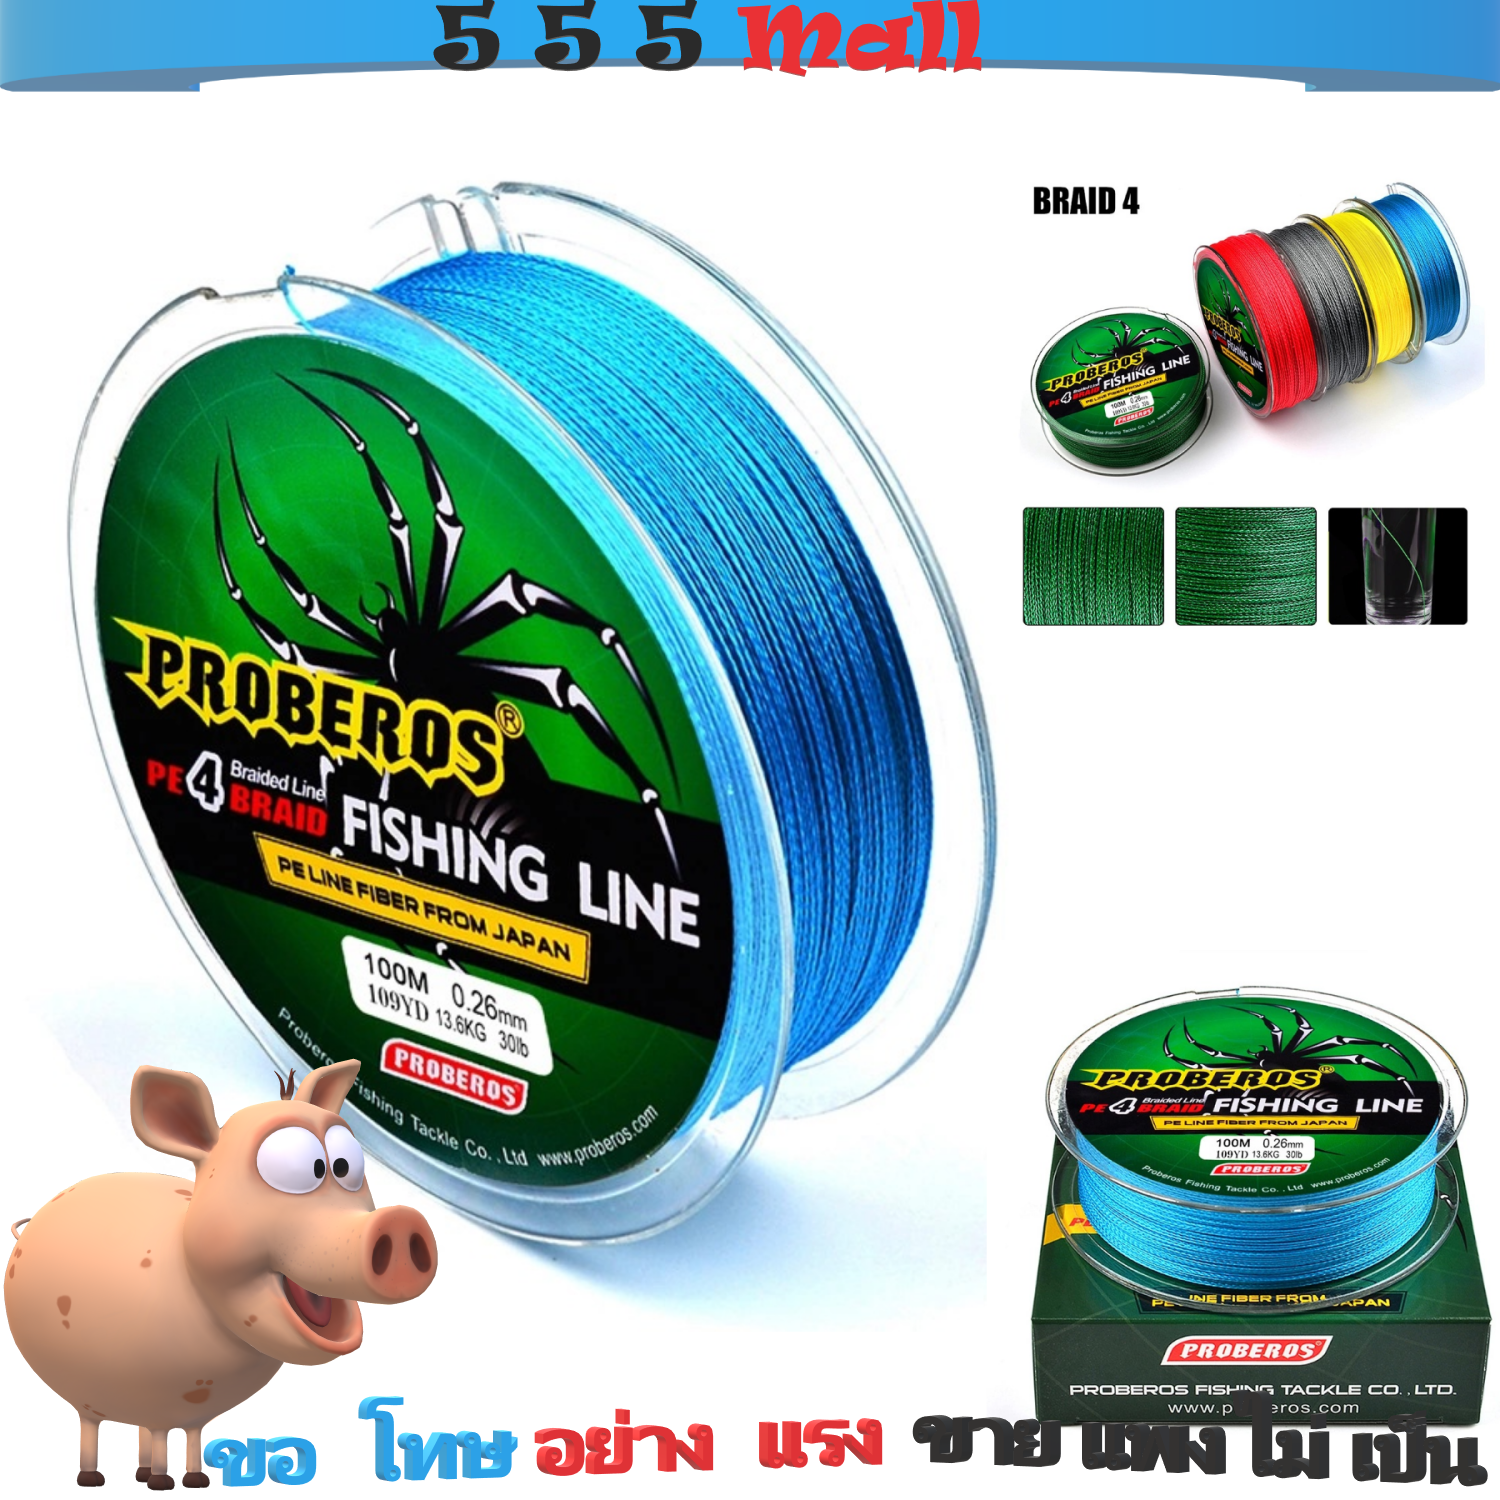 1-2 วัน (ส่งไว ราคาส่ง) สาย PE ถัก 4  สีเทา, สีฟ้า,สีแดง,สีเหลือง,สีเขียว เหนียว ทน ยาว 100 เมตร [ 555 MALL] Fishing line wire Proberos*1-2 วัน (ส่งไว ราคาส่ง)สายเบ็ด